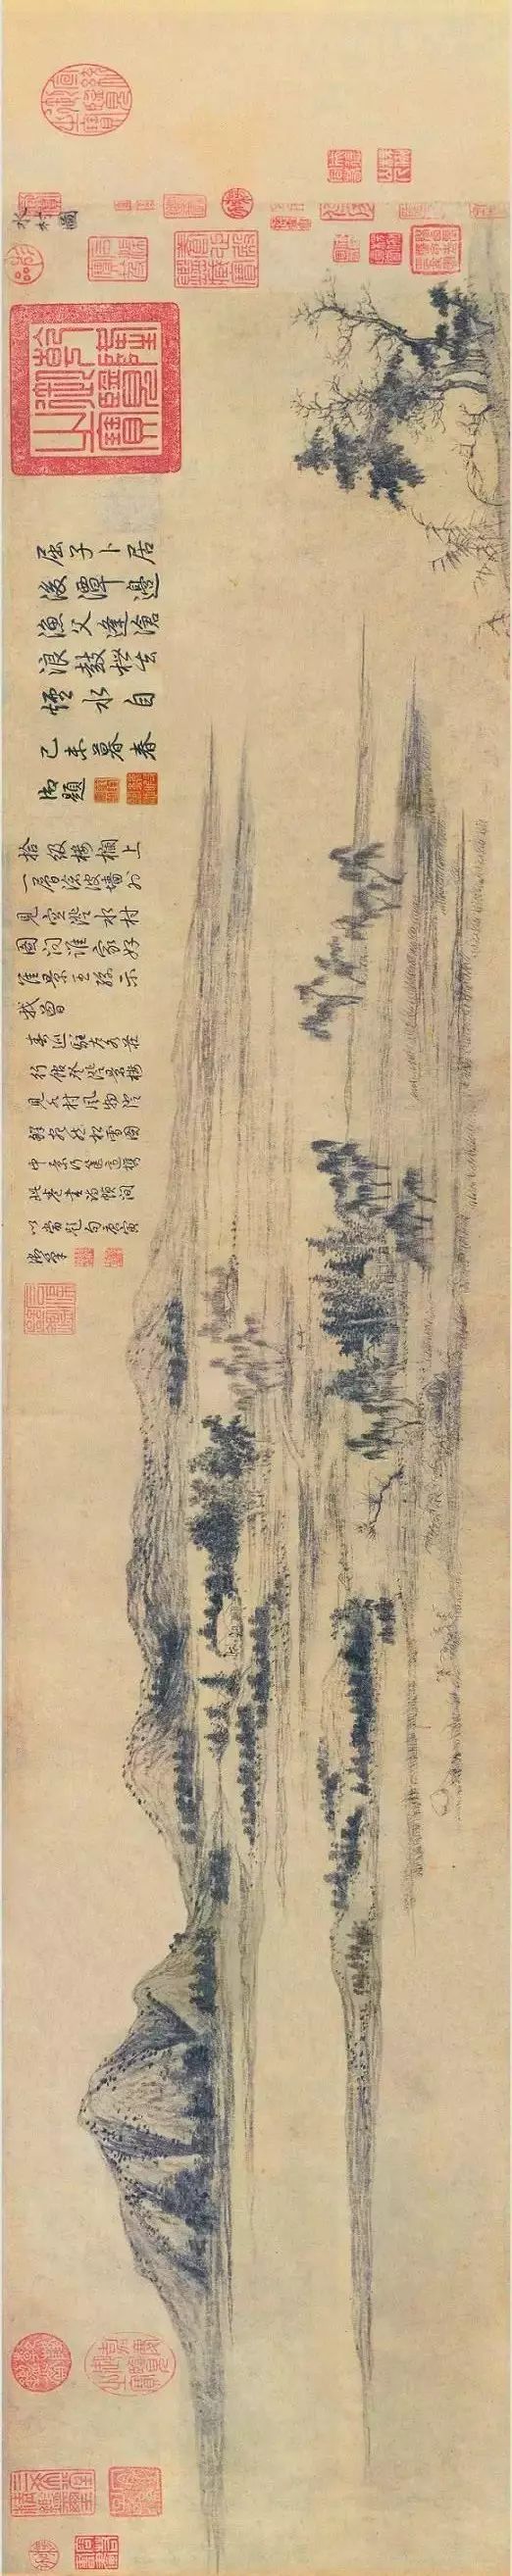 赵孟頫《水村图》,北京故宫博物院藏